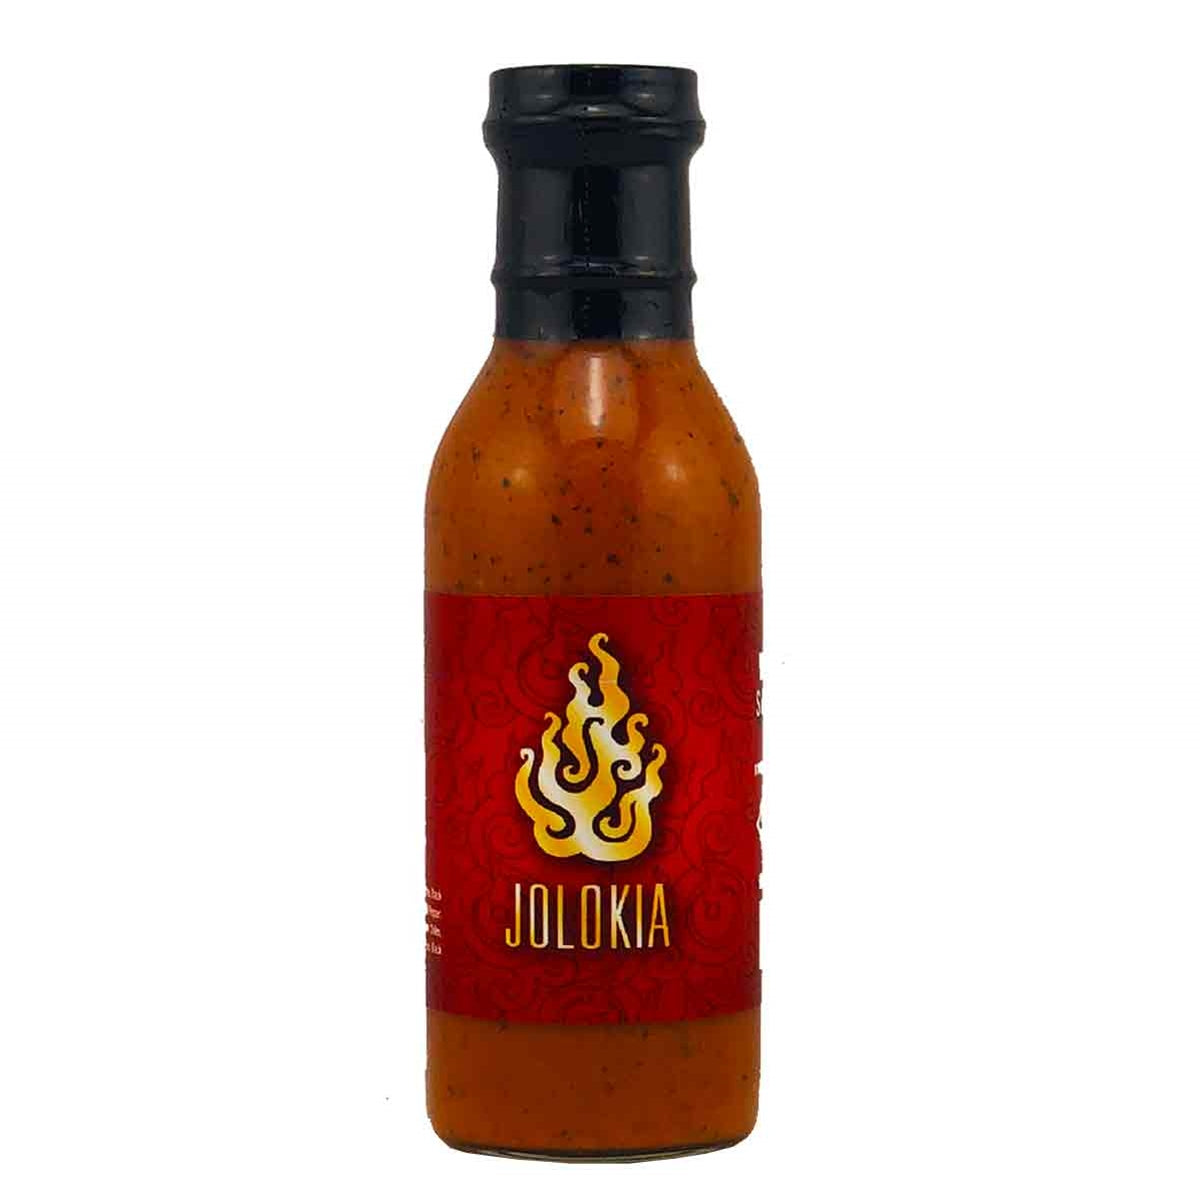 Cajohn's Jolokia Wing Sauce